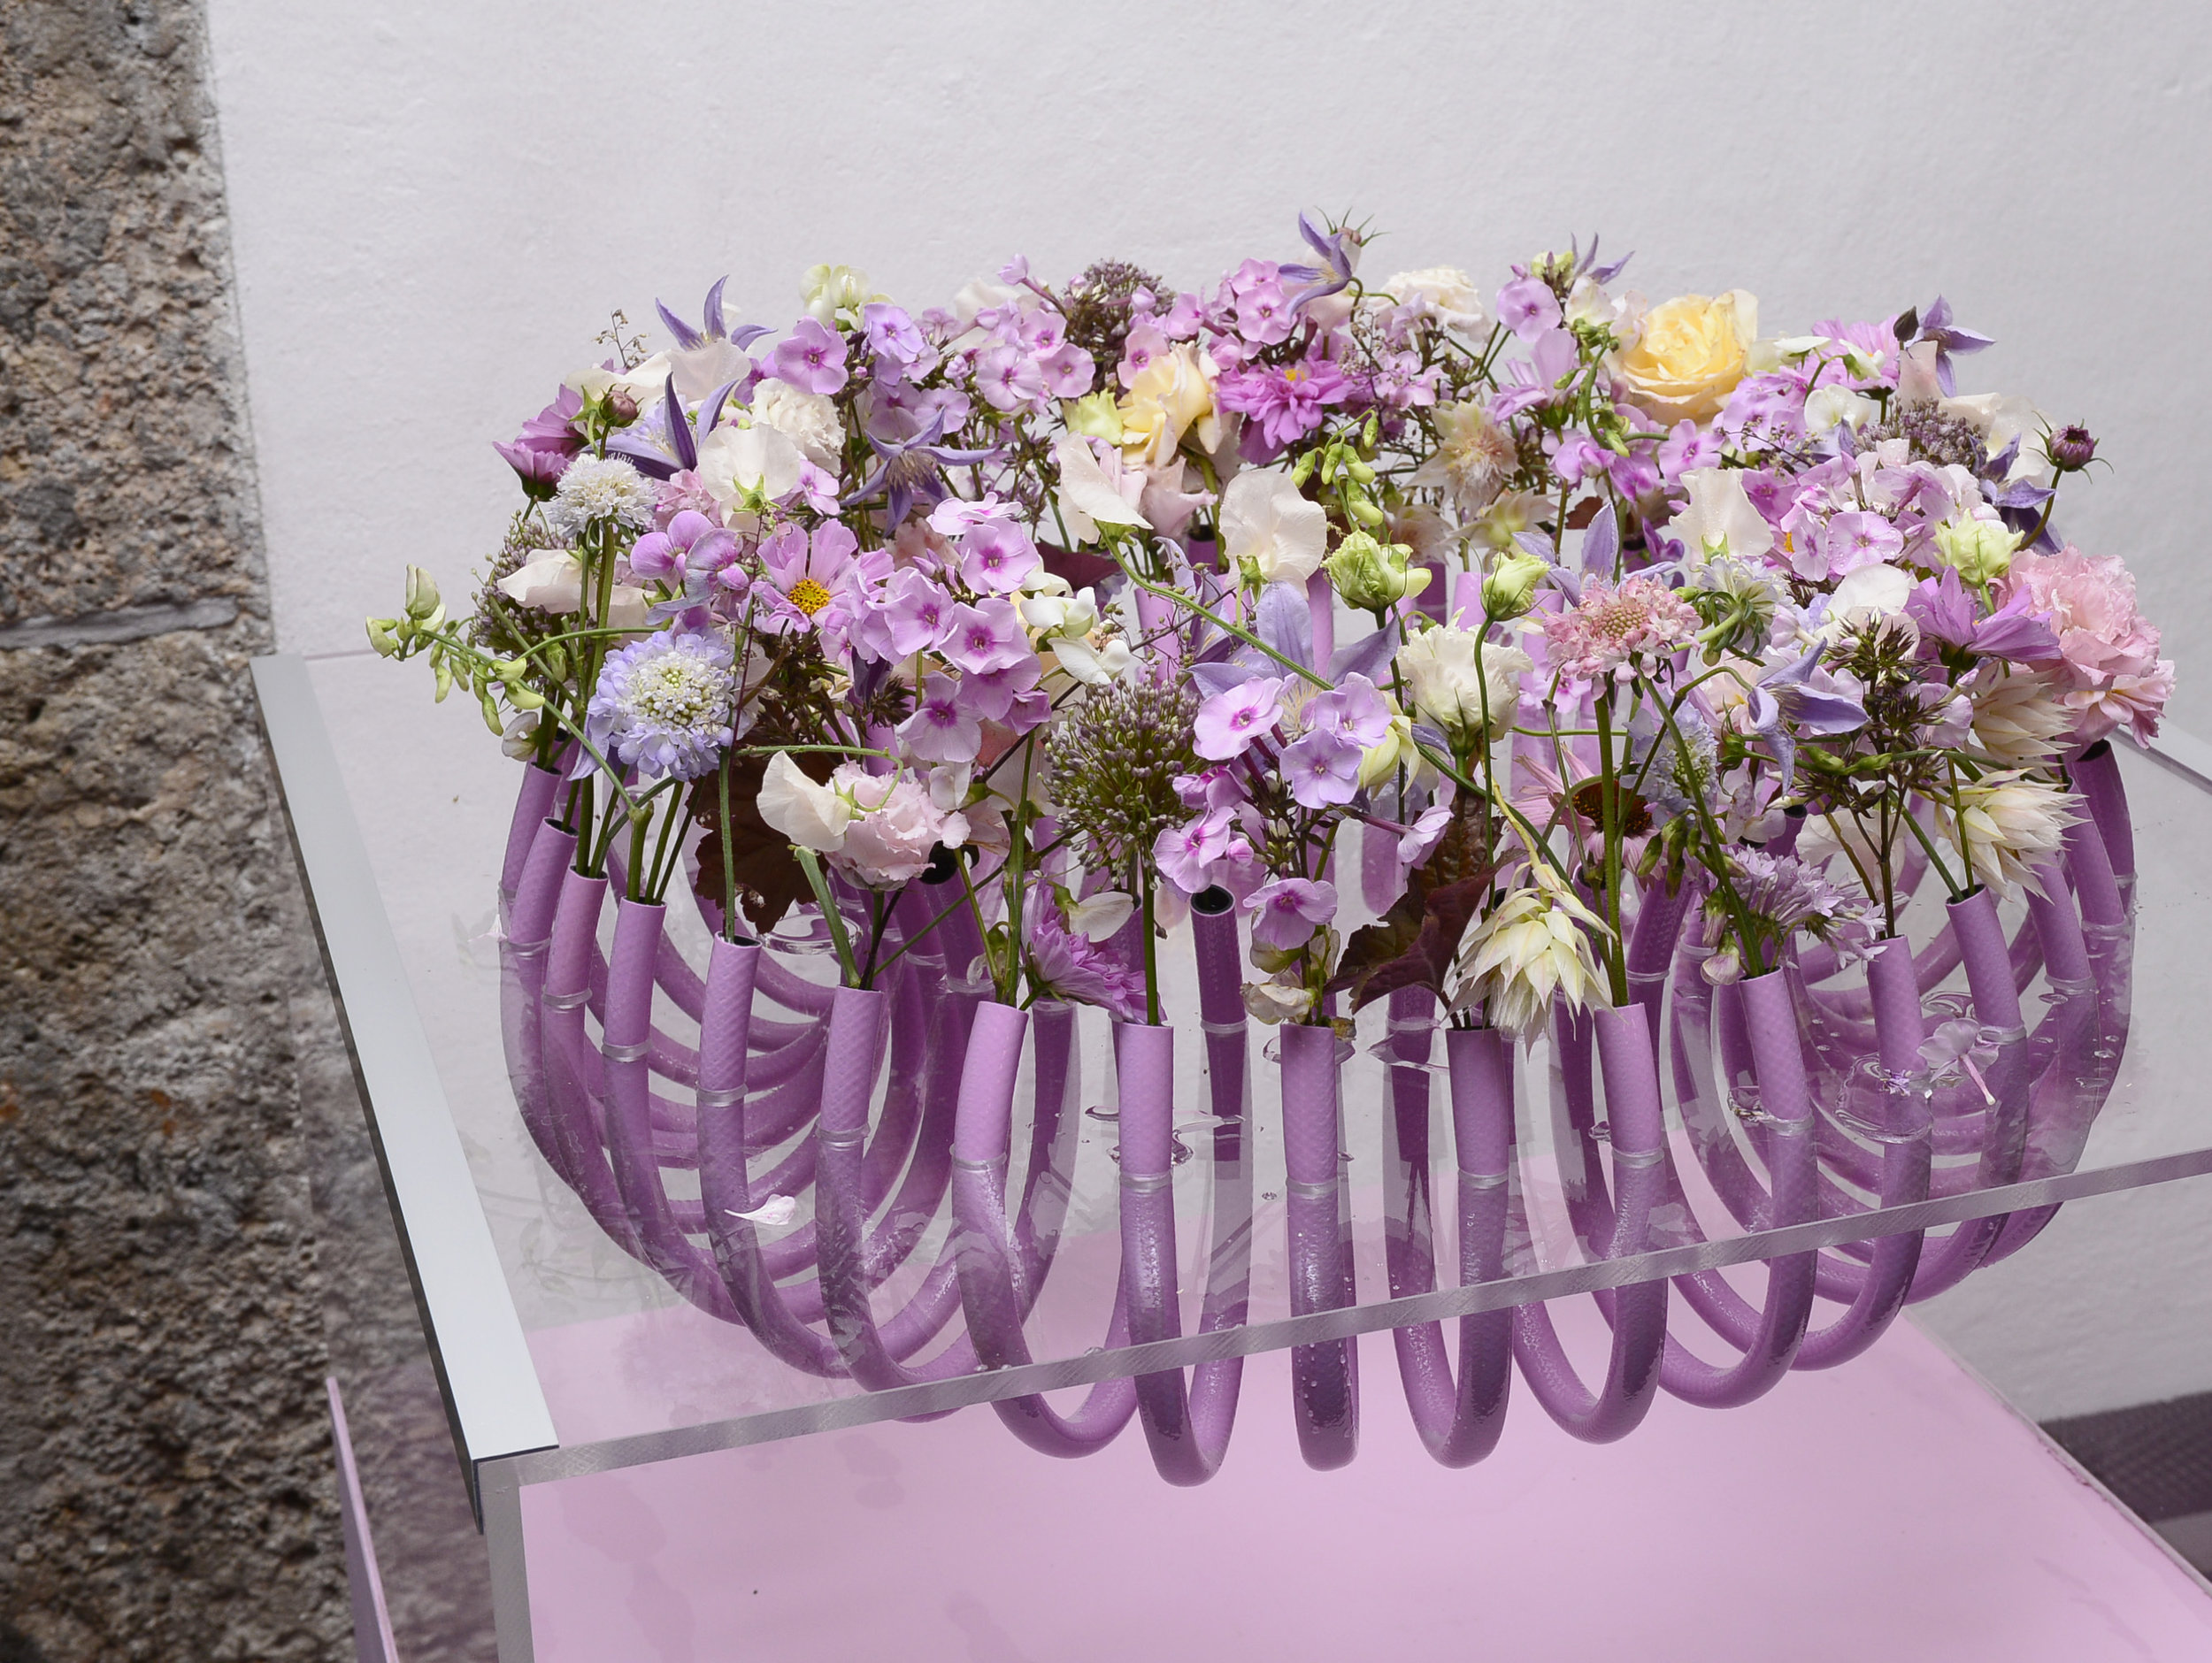  Valentina Messmer verknüpfte Innovation und die Zuneigung zu zarten Blütenformen. 